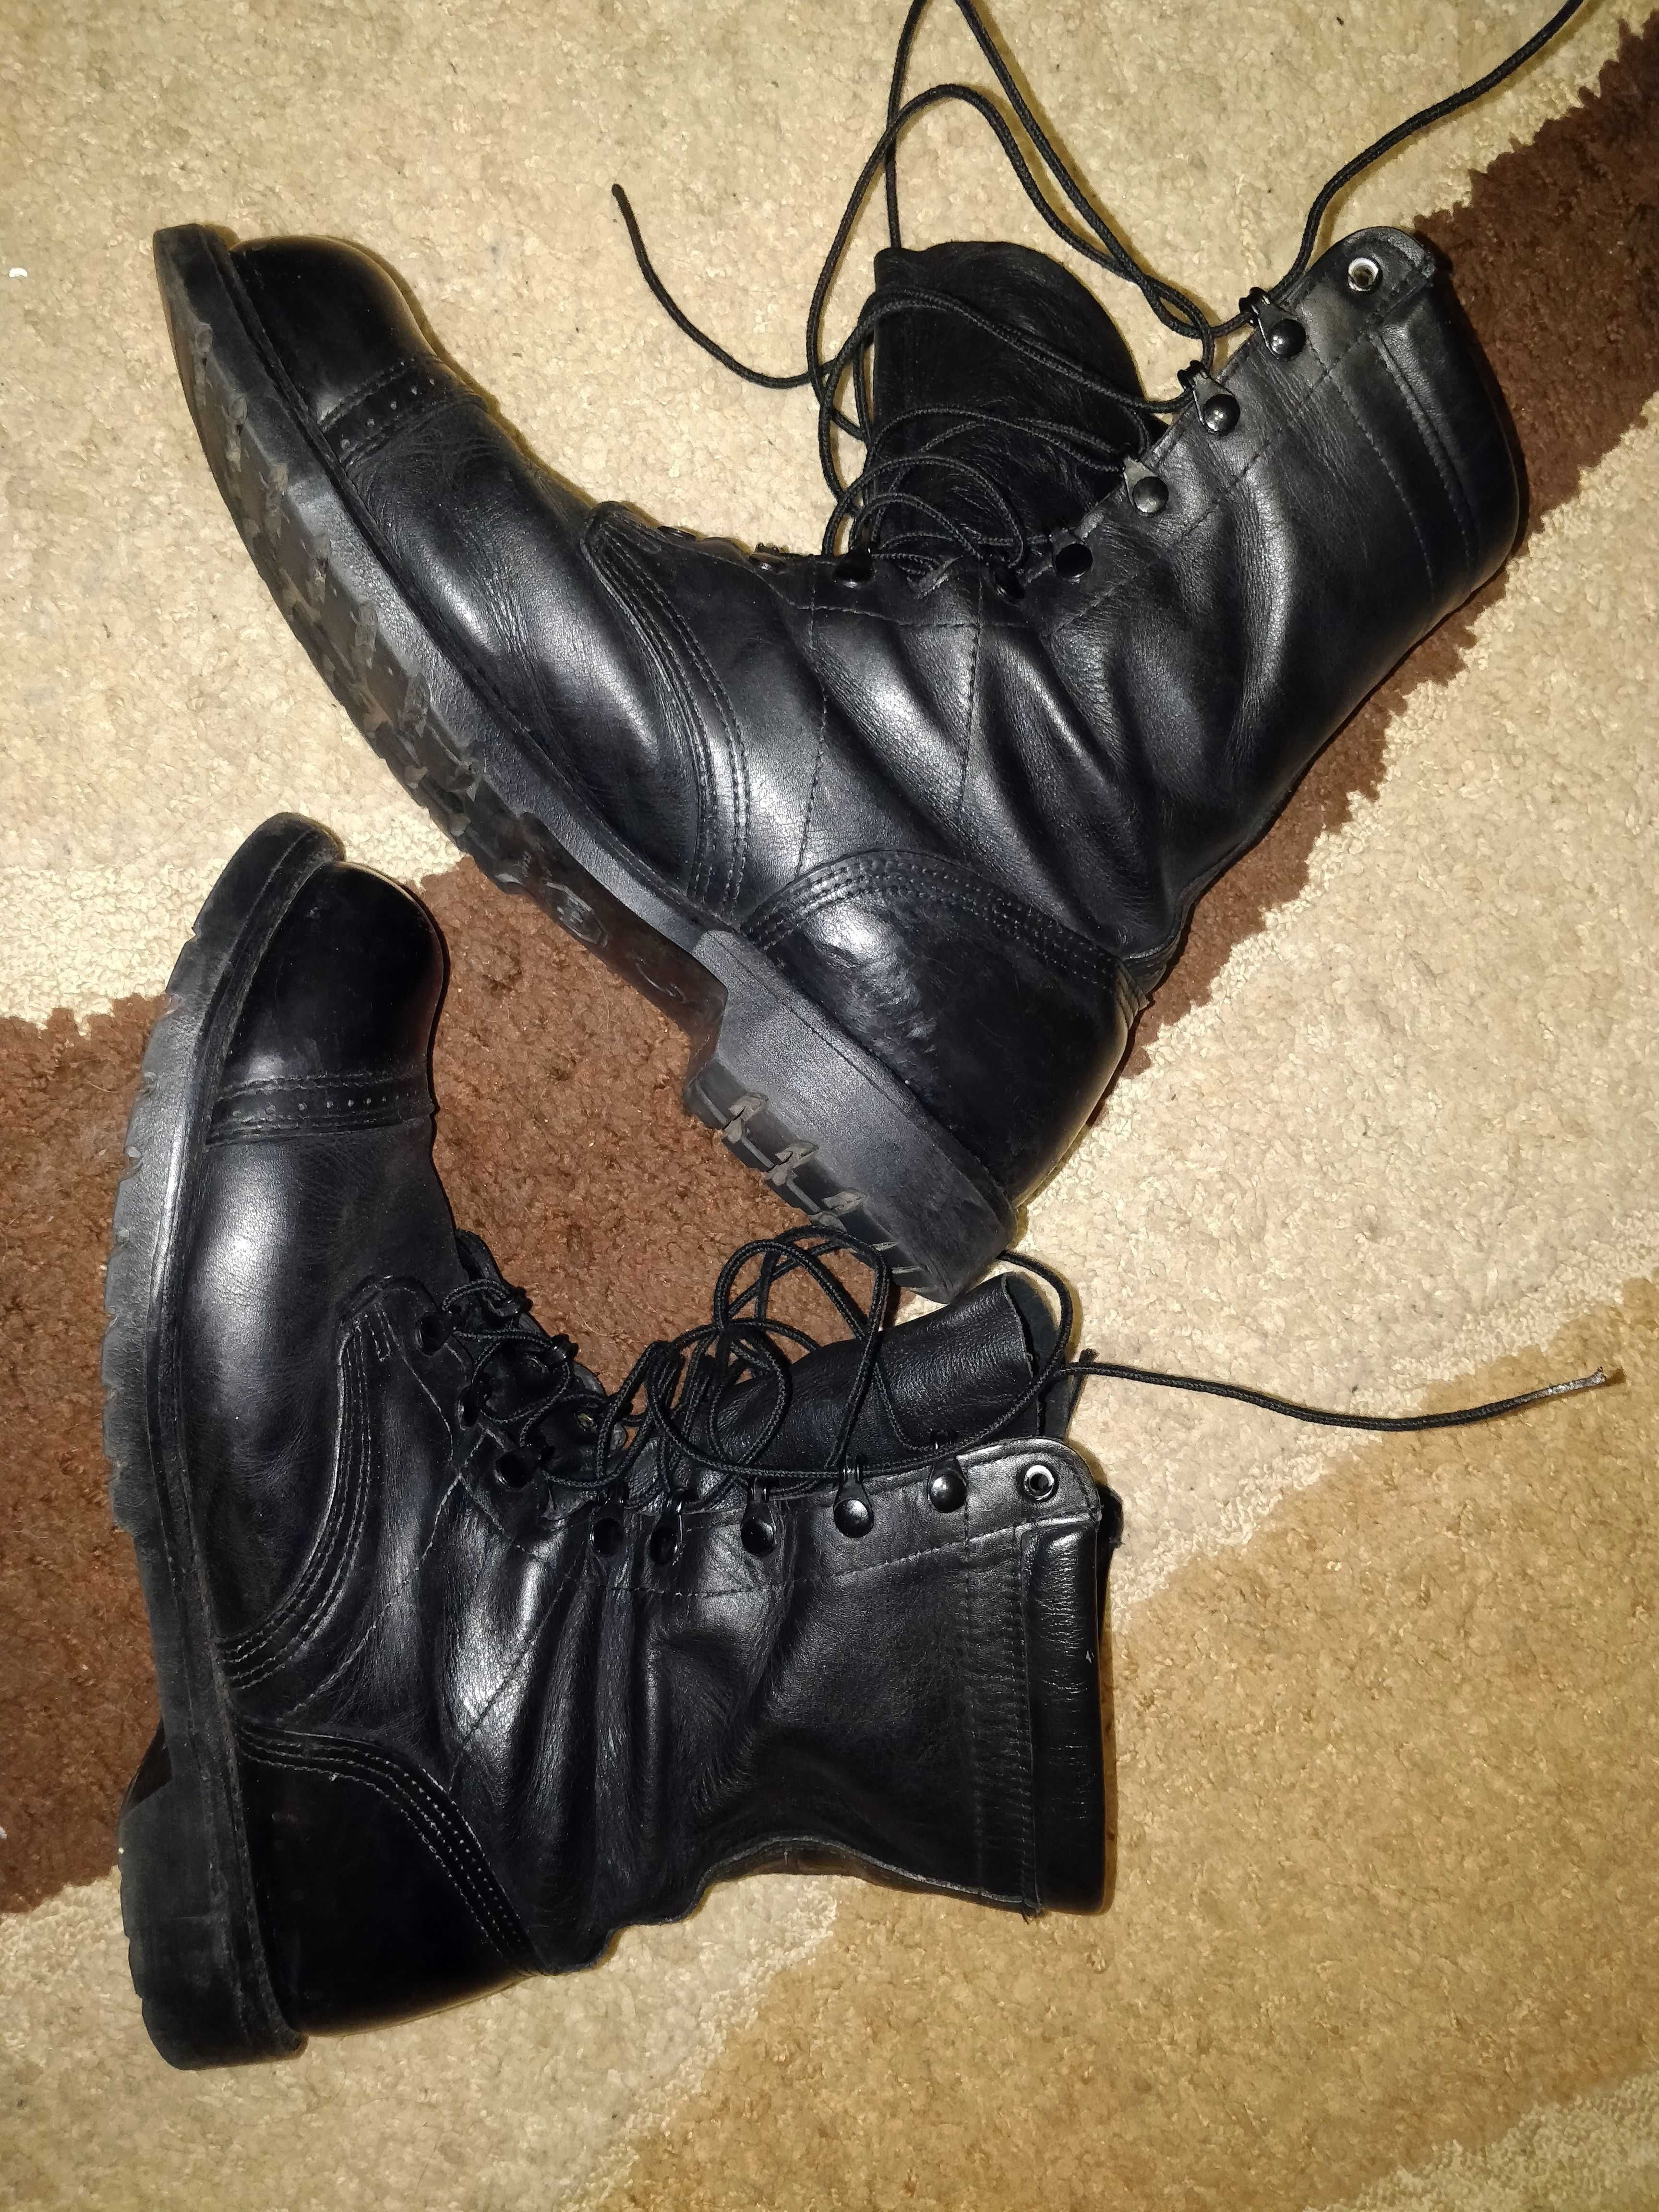 Ботинки Corcoran 1525 Leather Field Boot USA. 12E (31 см)